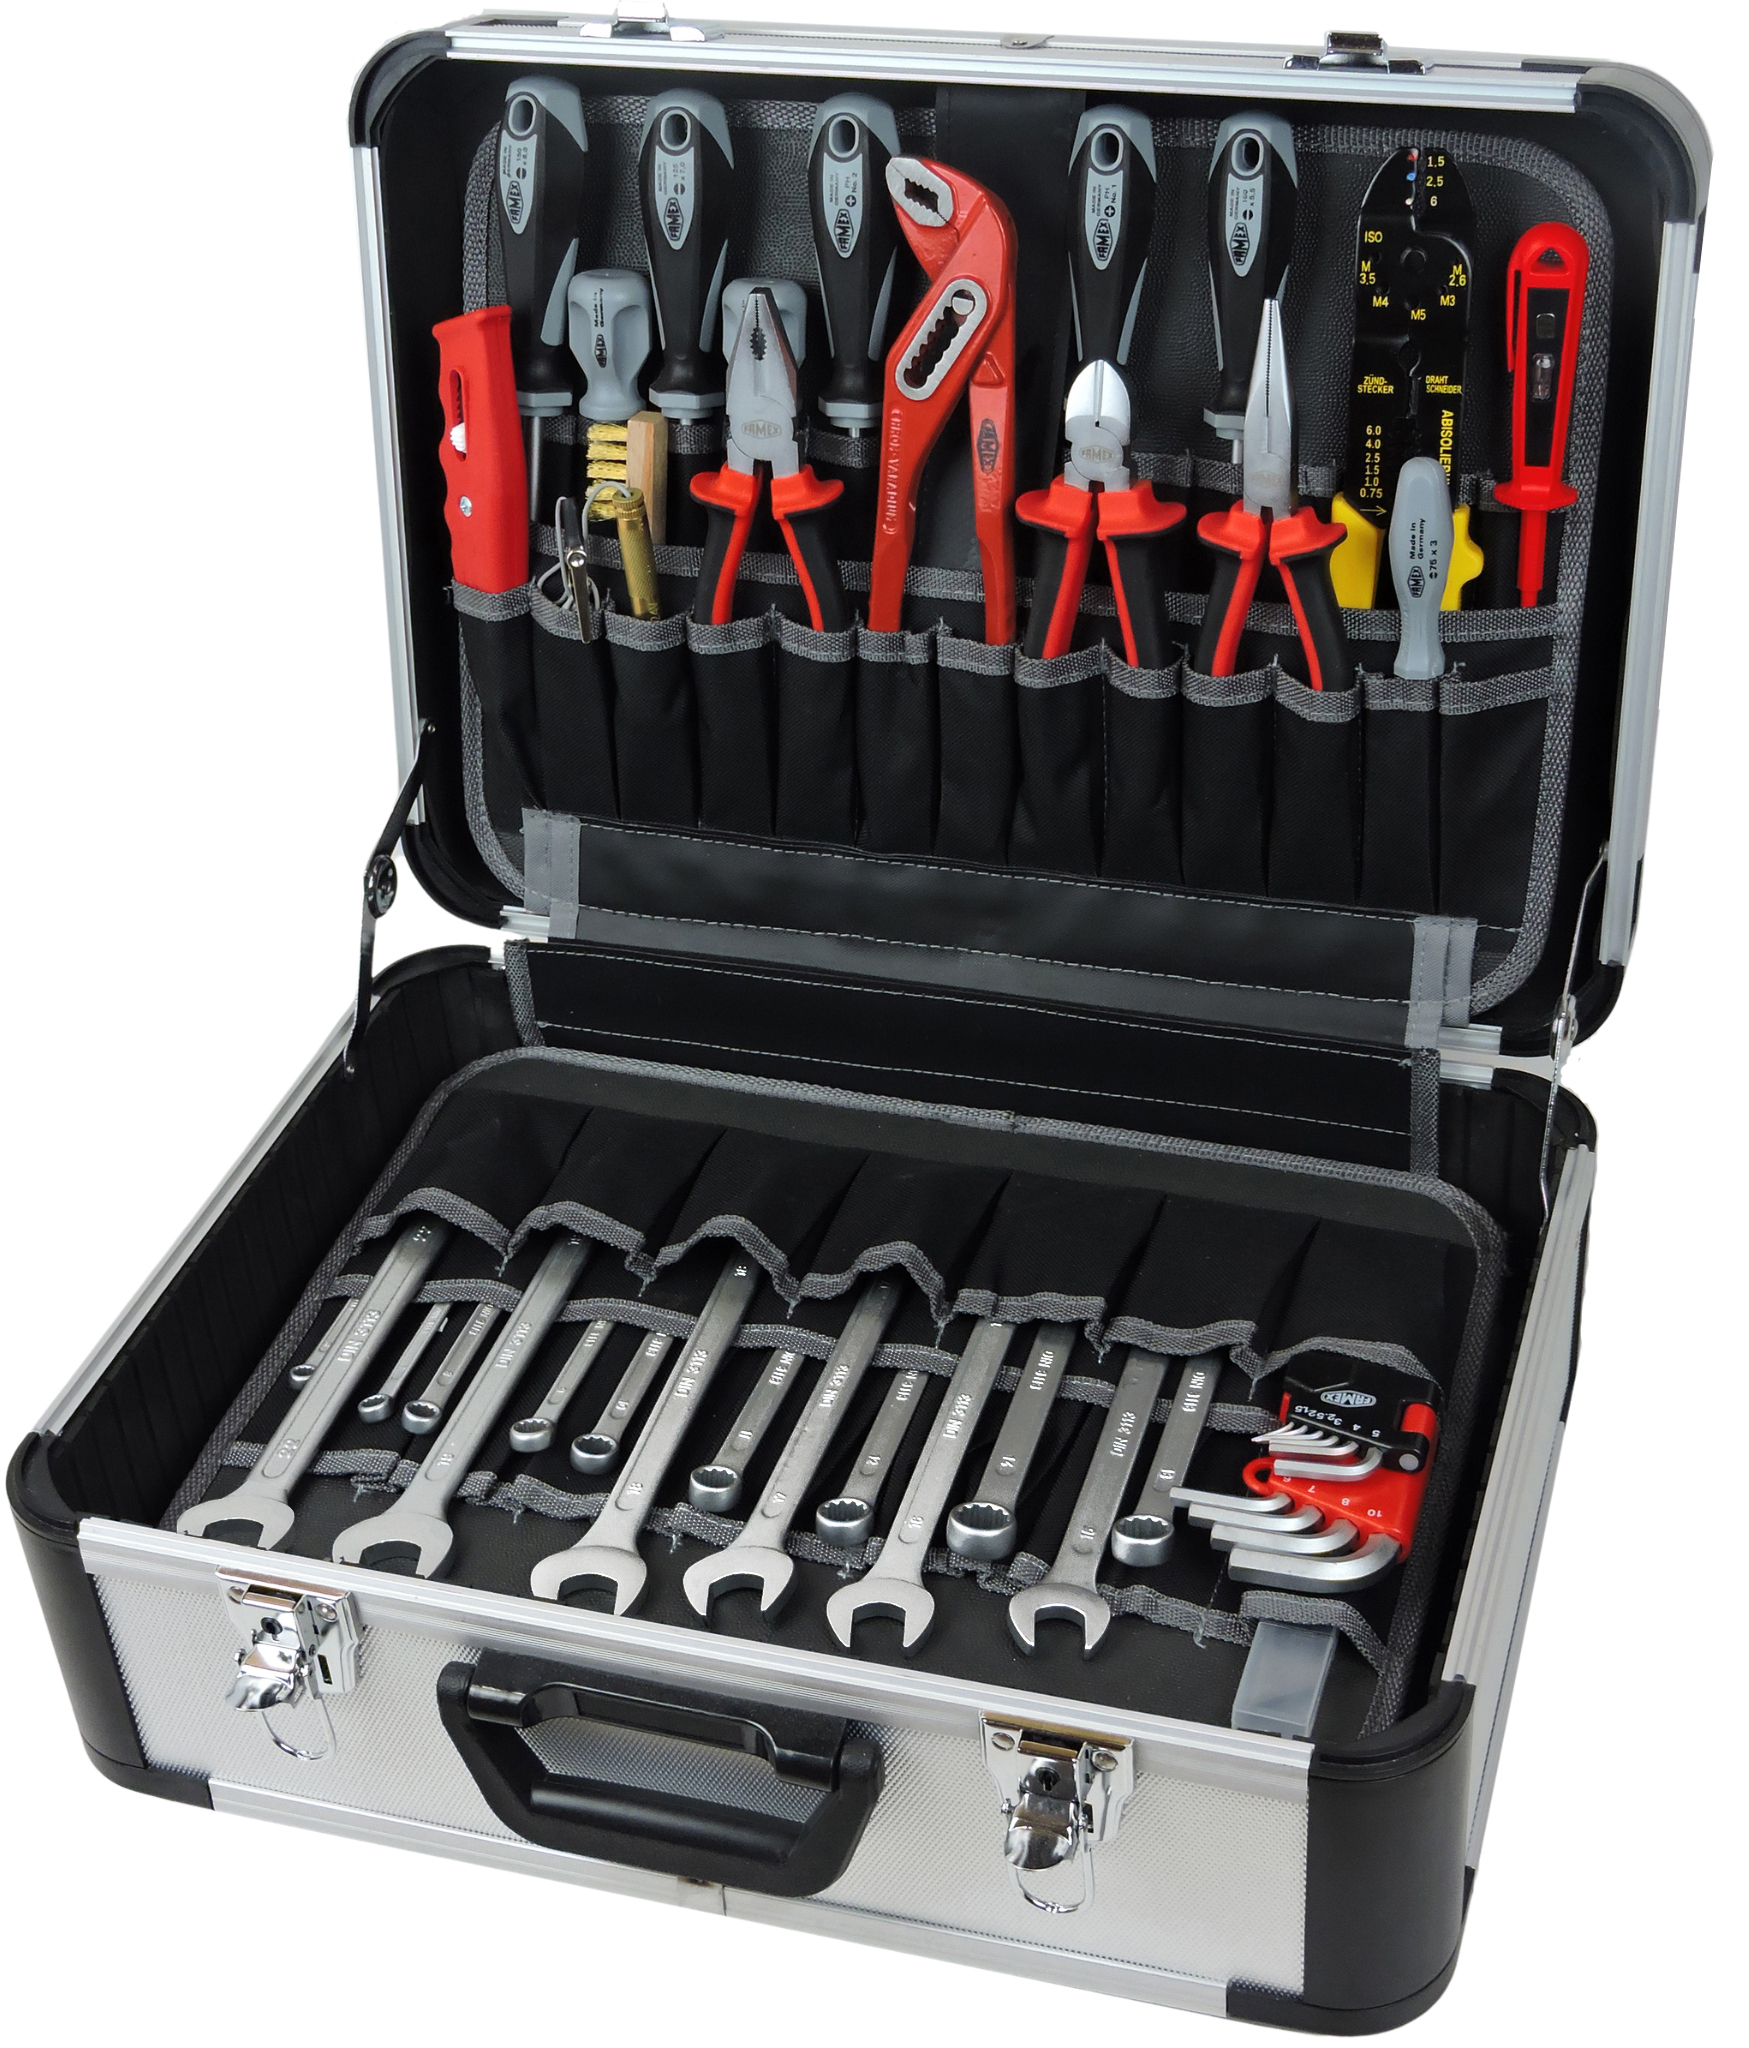 423-47 Werkzeug Werkzeuge Steckschlüsselsatz Werkzeugkoffer FAMEX - und kaufen gefüllt online günstig mit